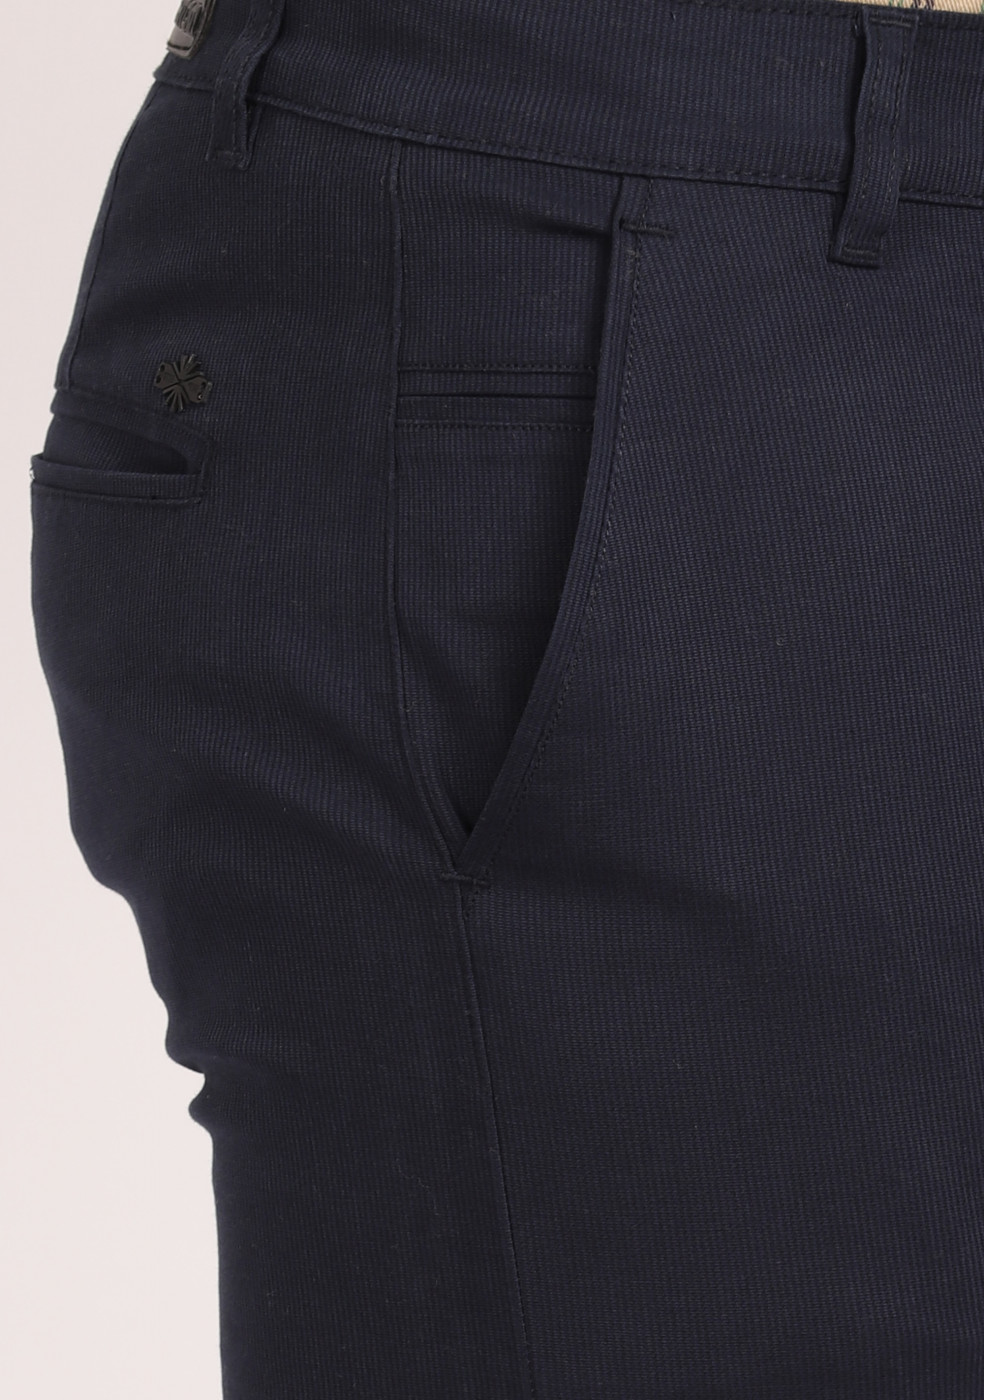 ASHTOM Navy Cotton Formal Trouser Regular Fit For Men